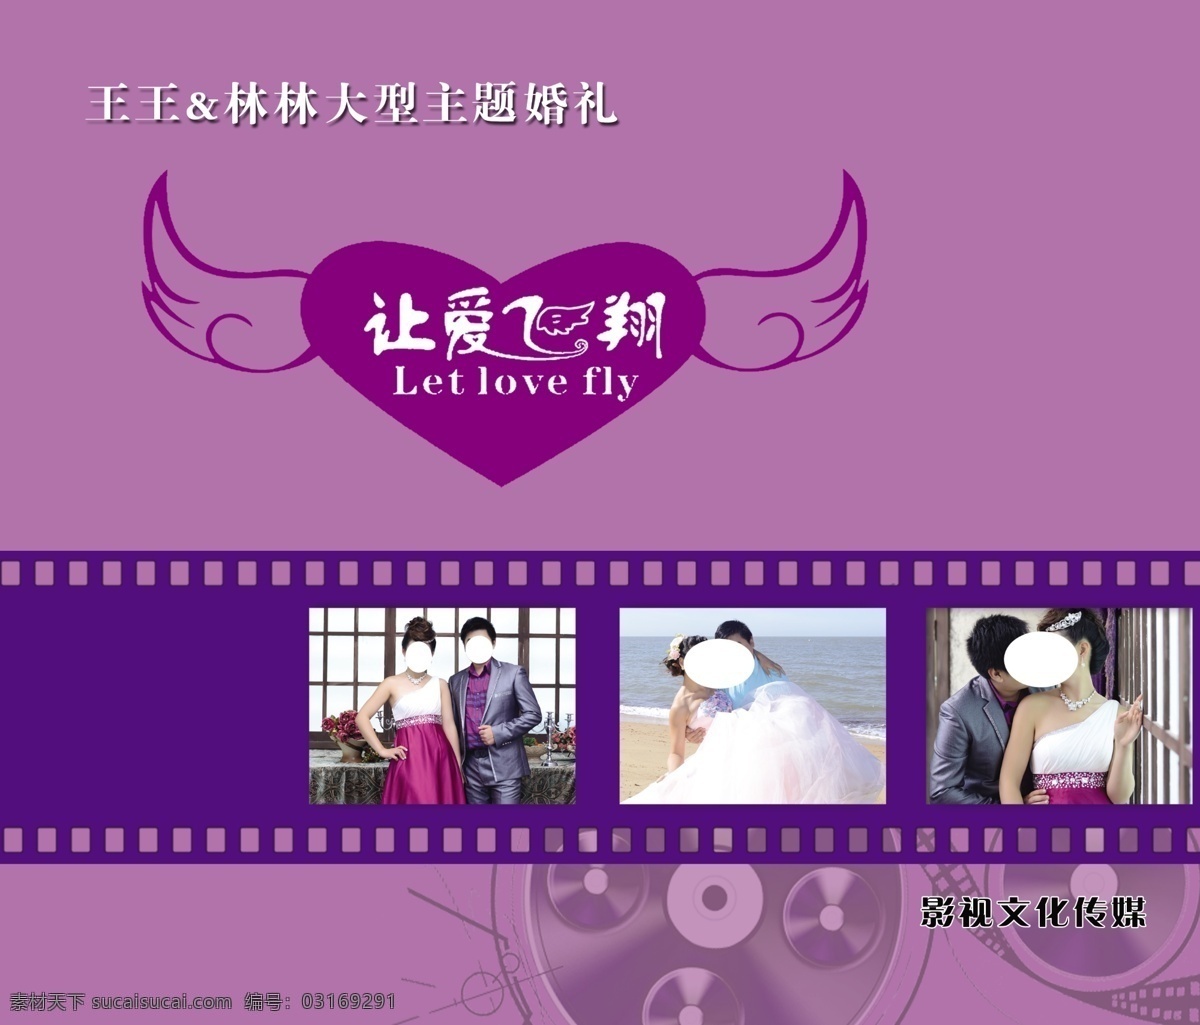 婚庆展板 让爱飞翔 婚礼logo 胶片 紫色背景 源文件 分层